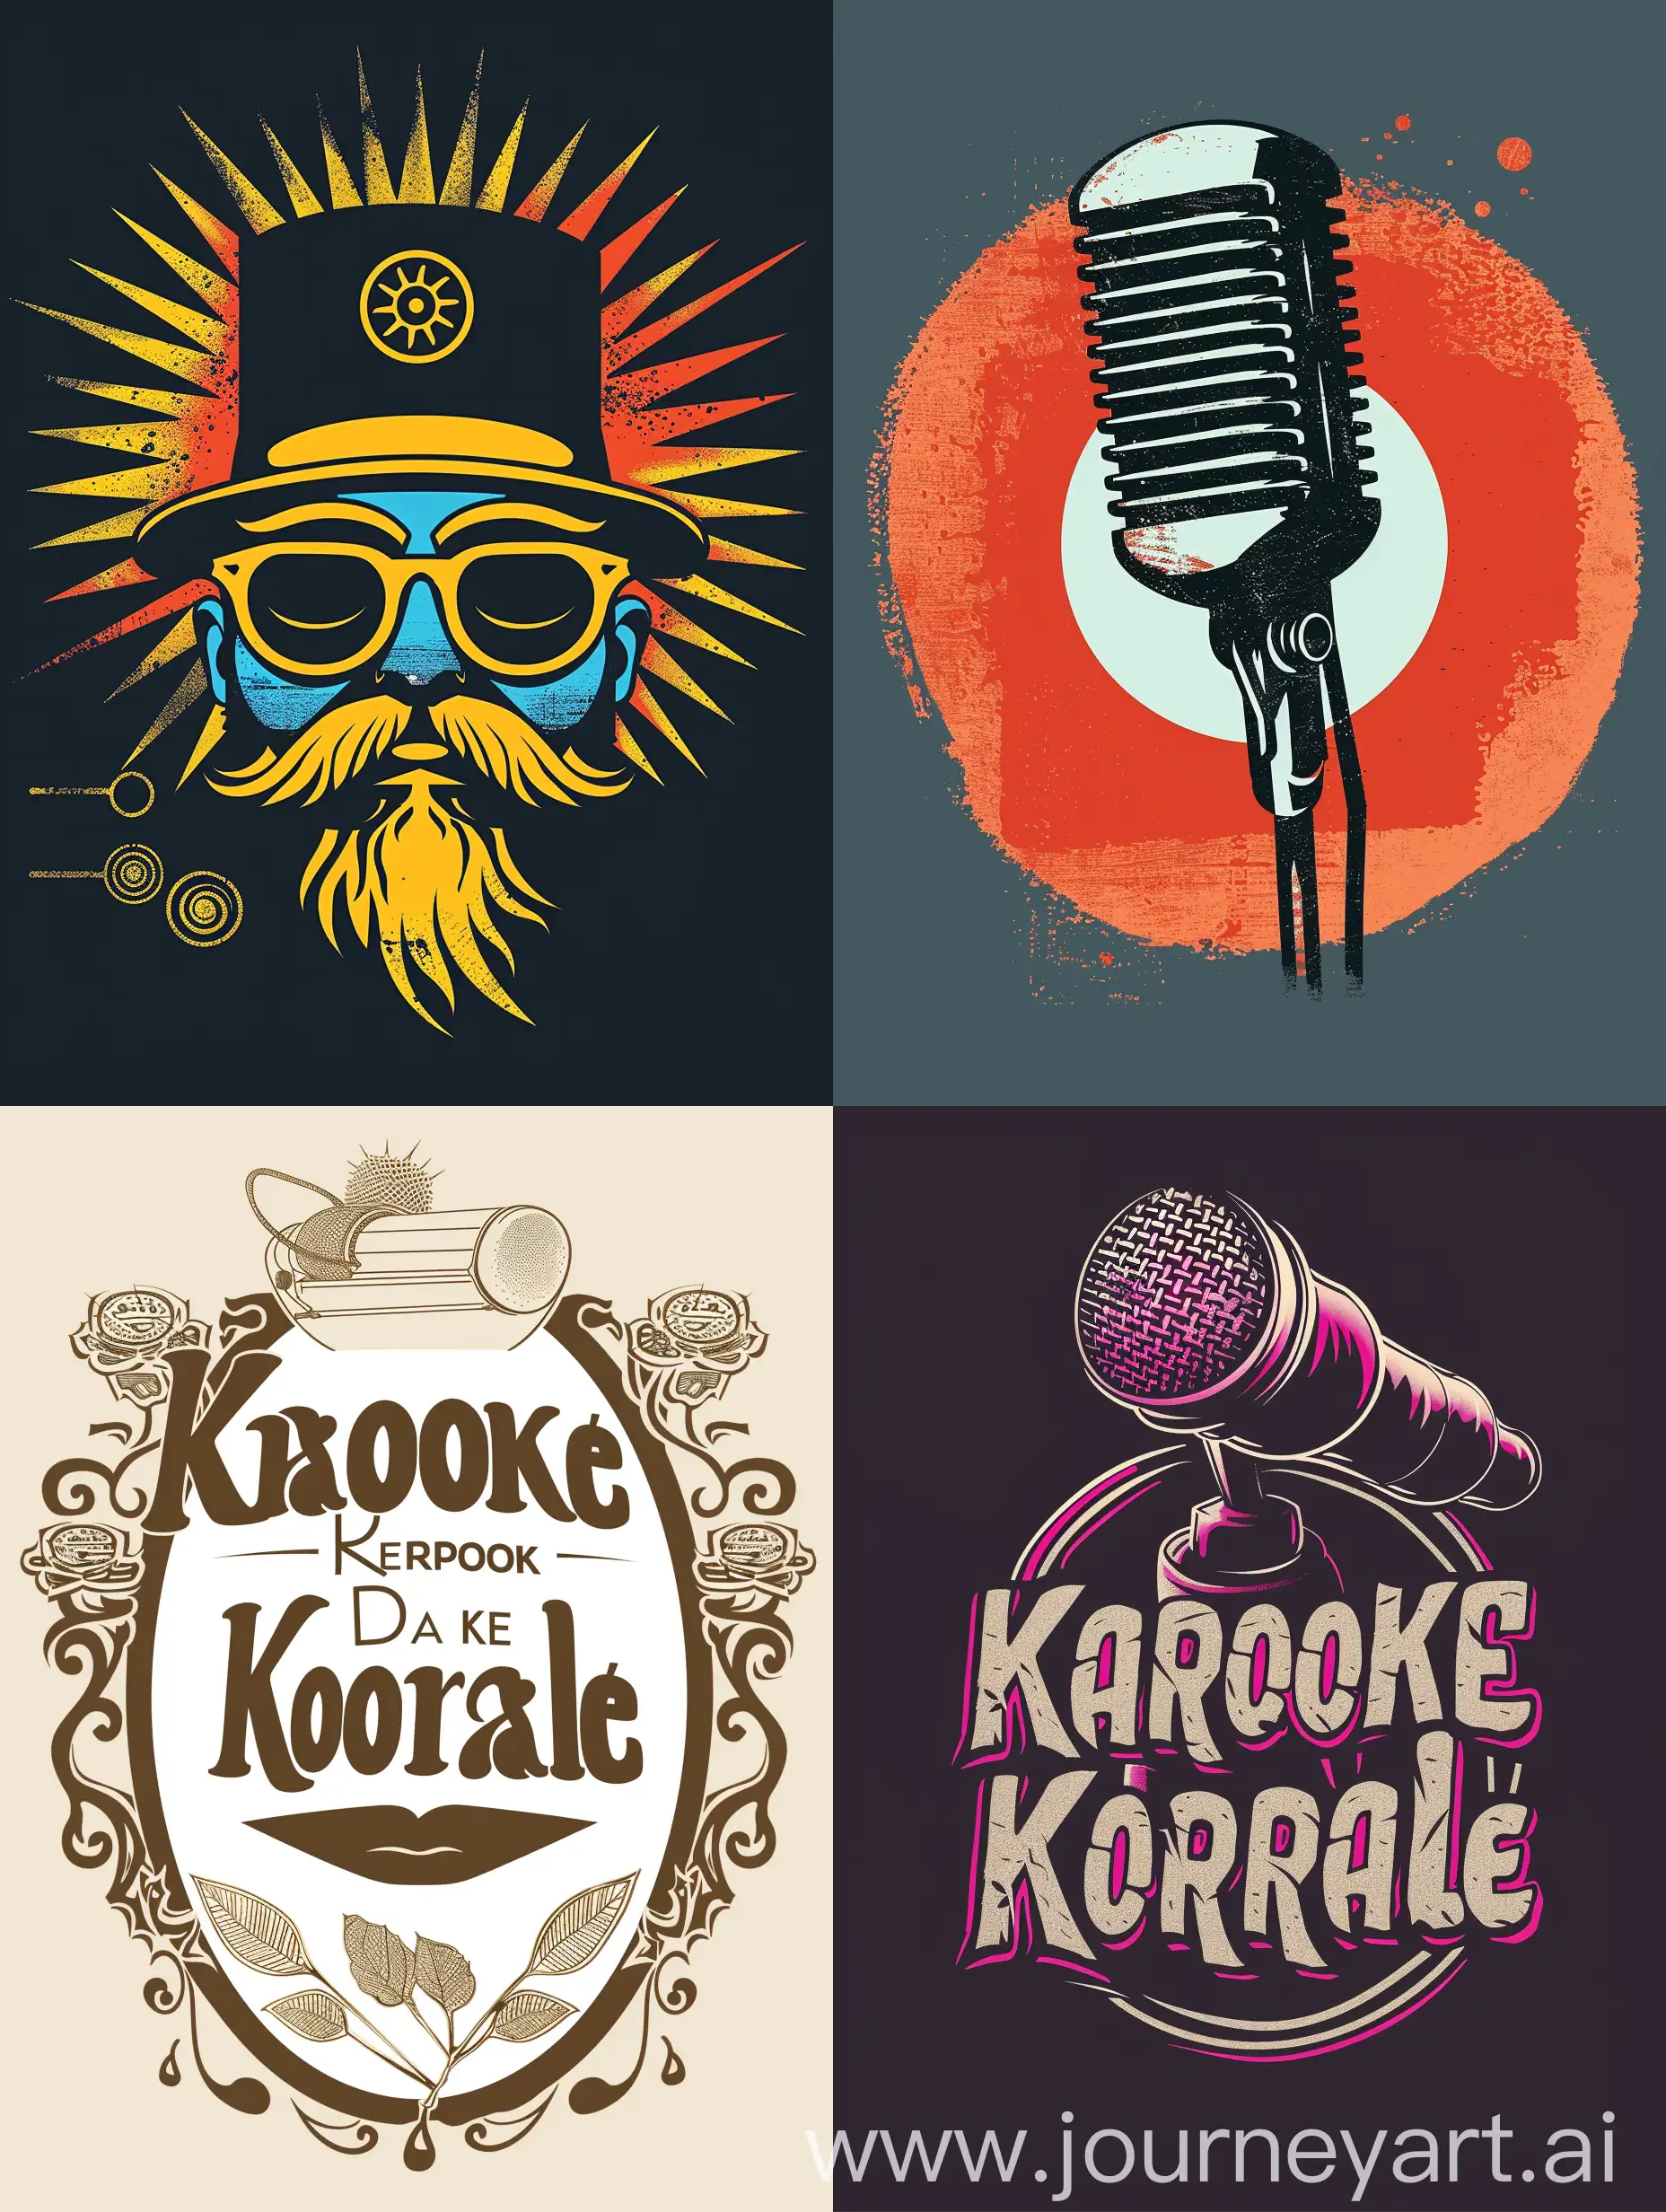 придумать логотип  Караоке клубу где раньше находились дачи творческой интеллигенции: писатели, актеры, режиссеры. С названием караоке "Karaoke Korral "  